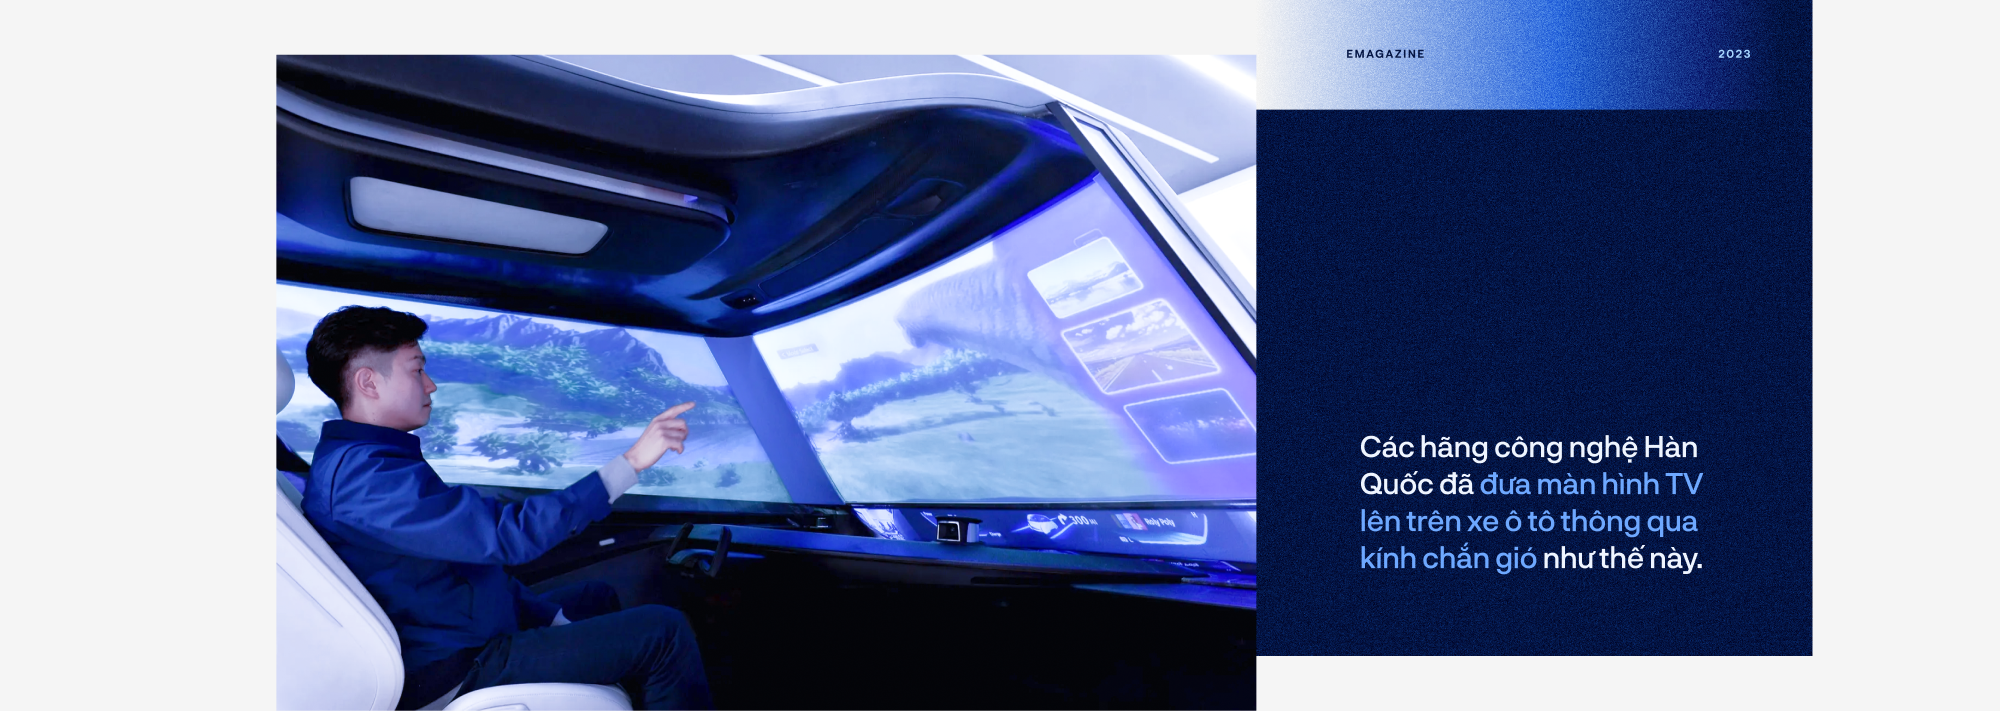 TV Samsung khẳng định tầm nhìn công nghệ hiển thị tương lai - Ảnh 3.